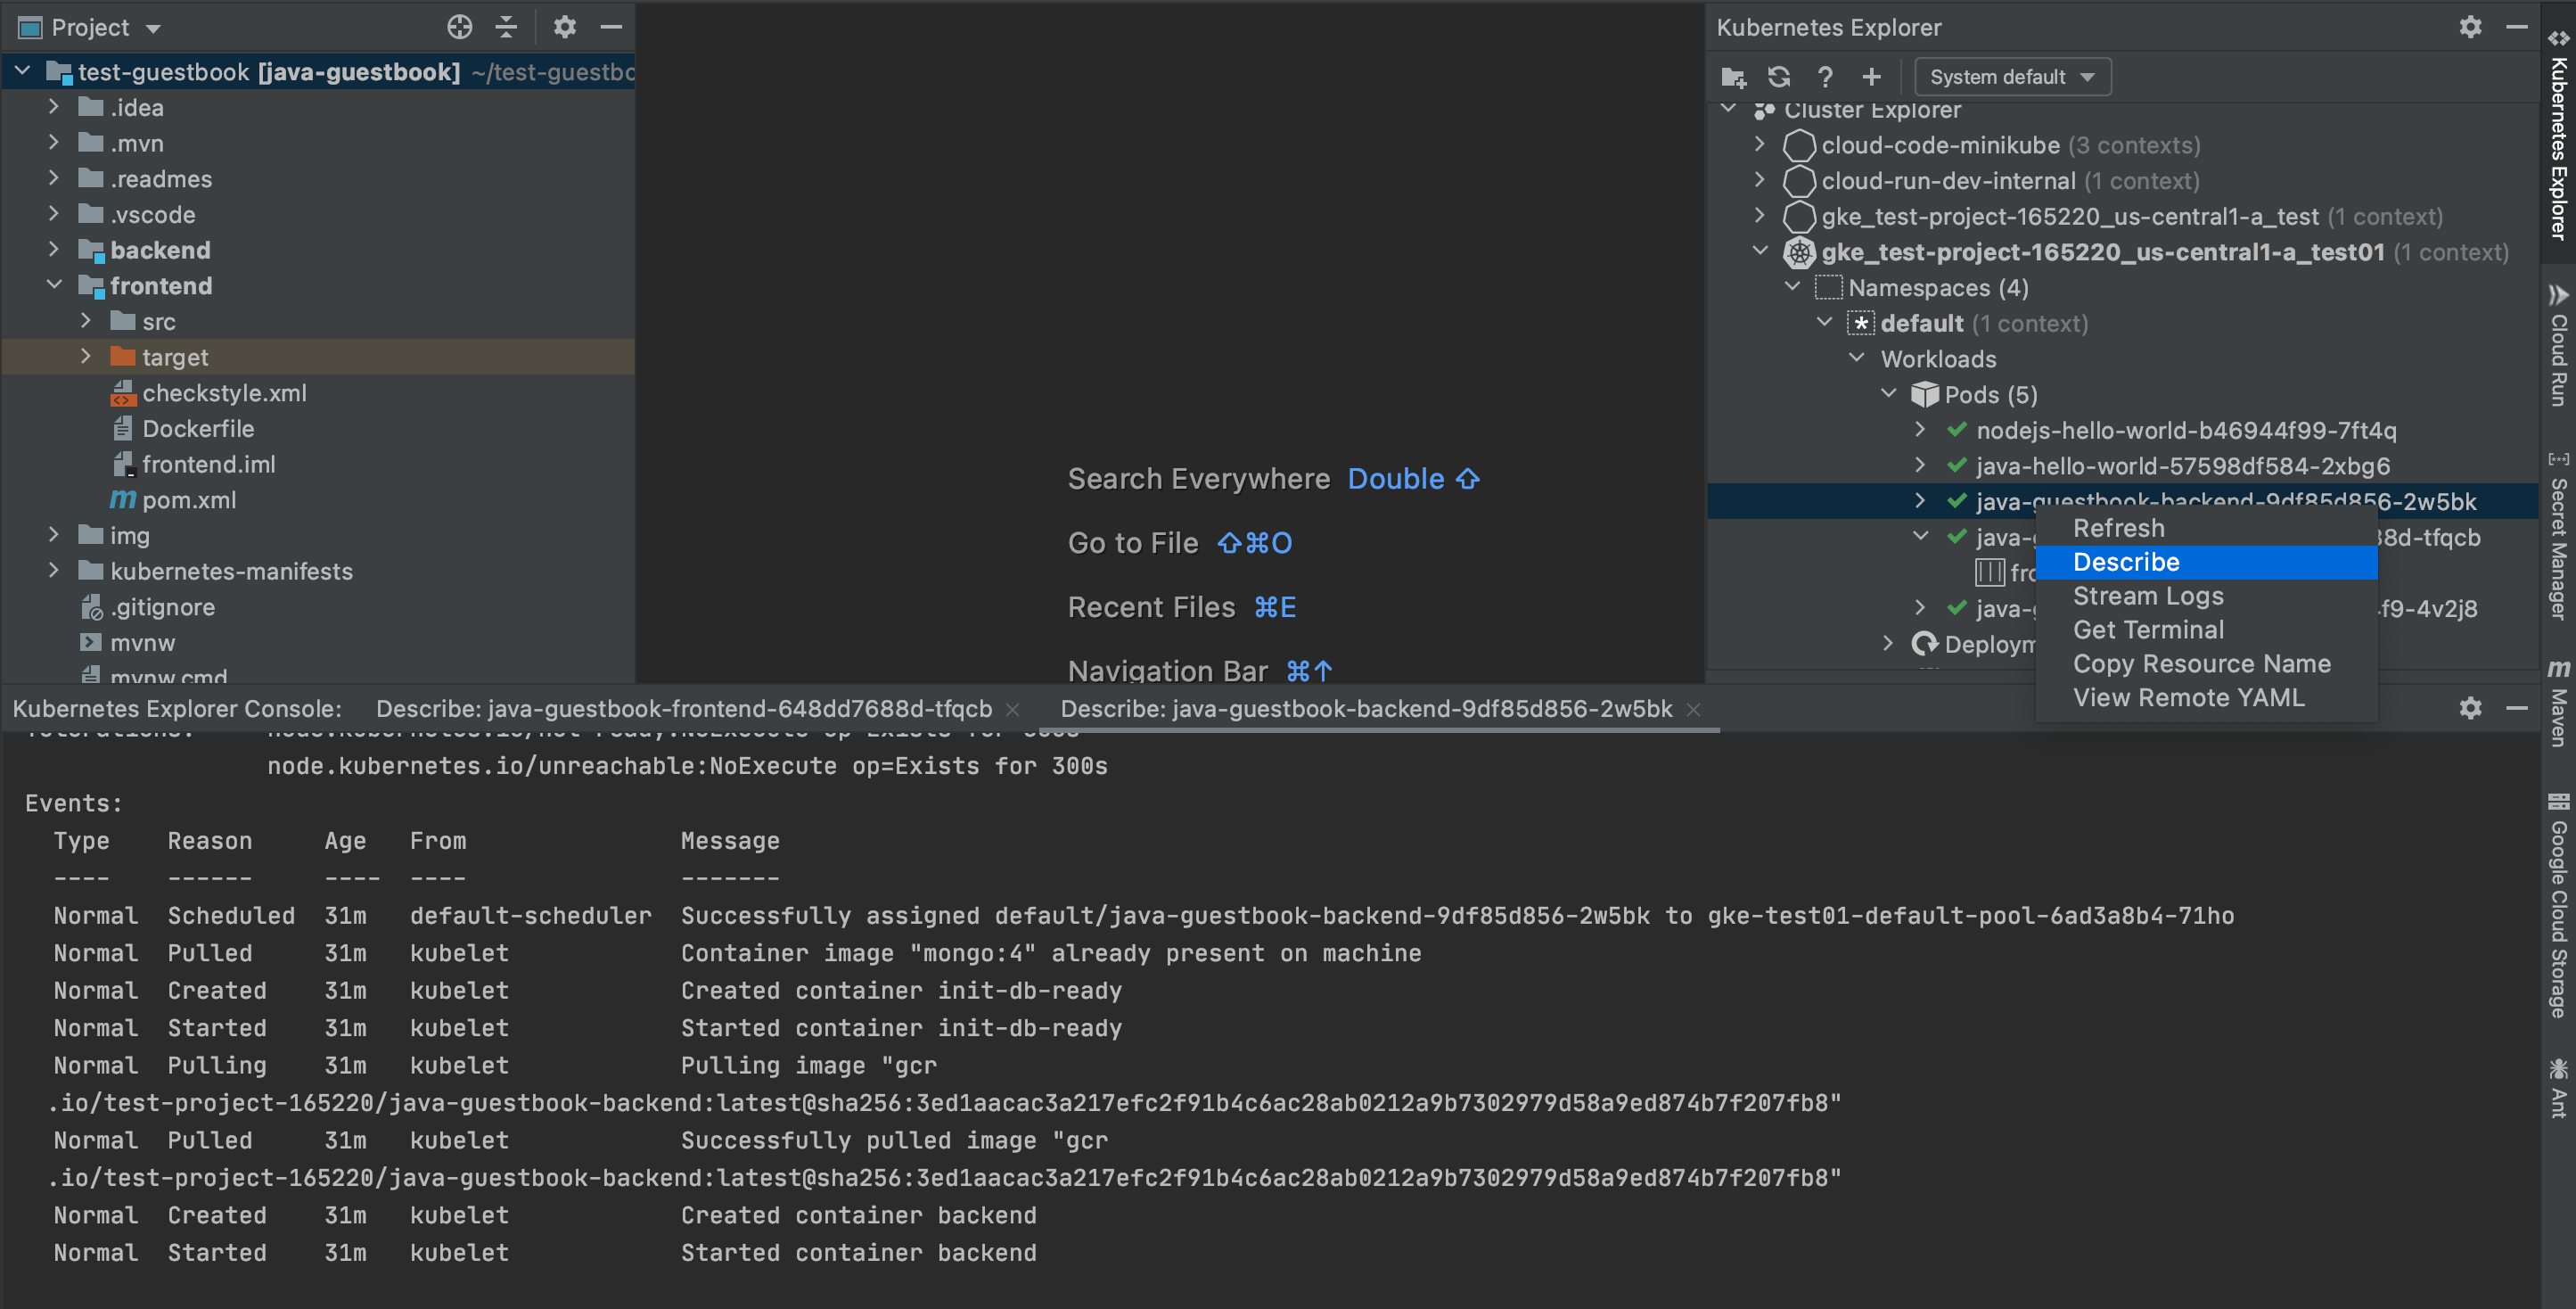 右键点击 Kubernetes Explorer 中的相应资源并选择“描述”时可用的描述选项